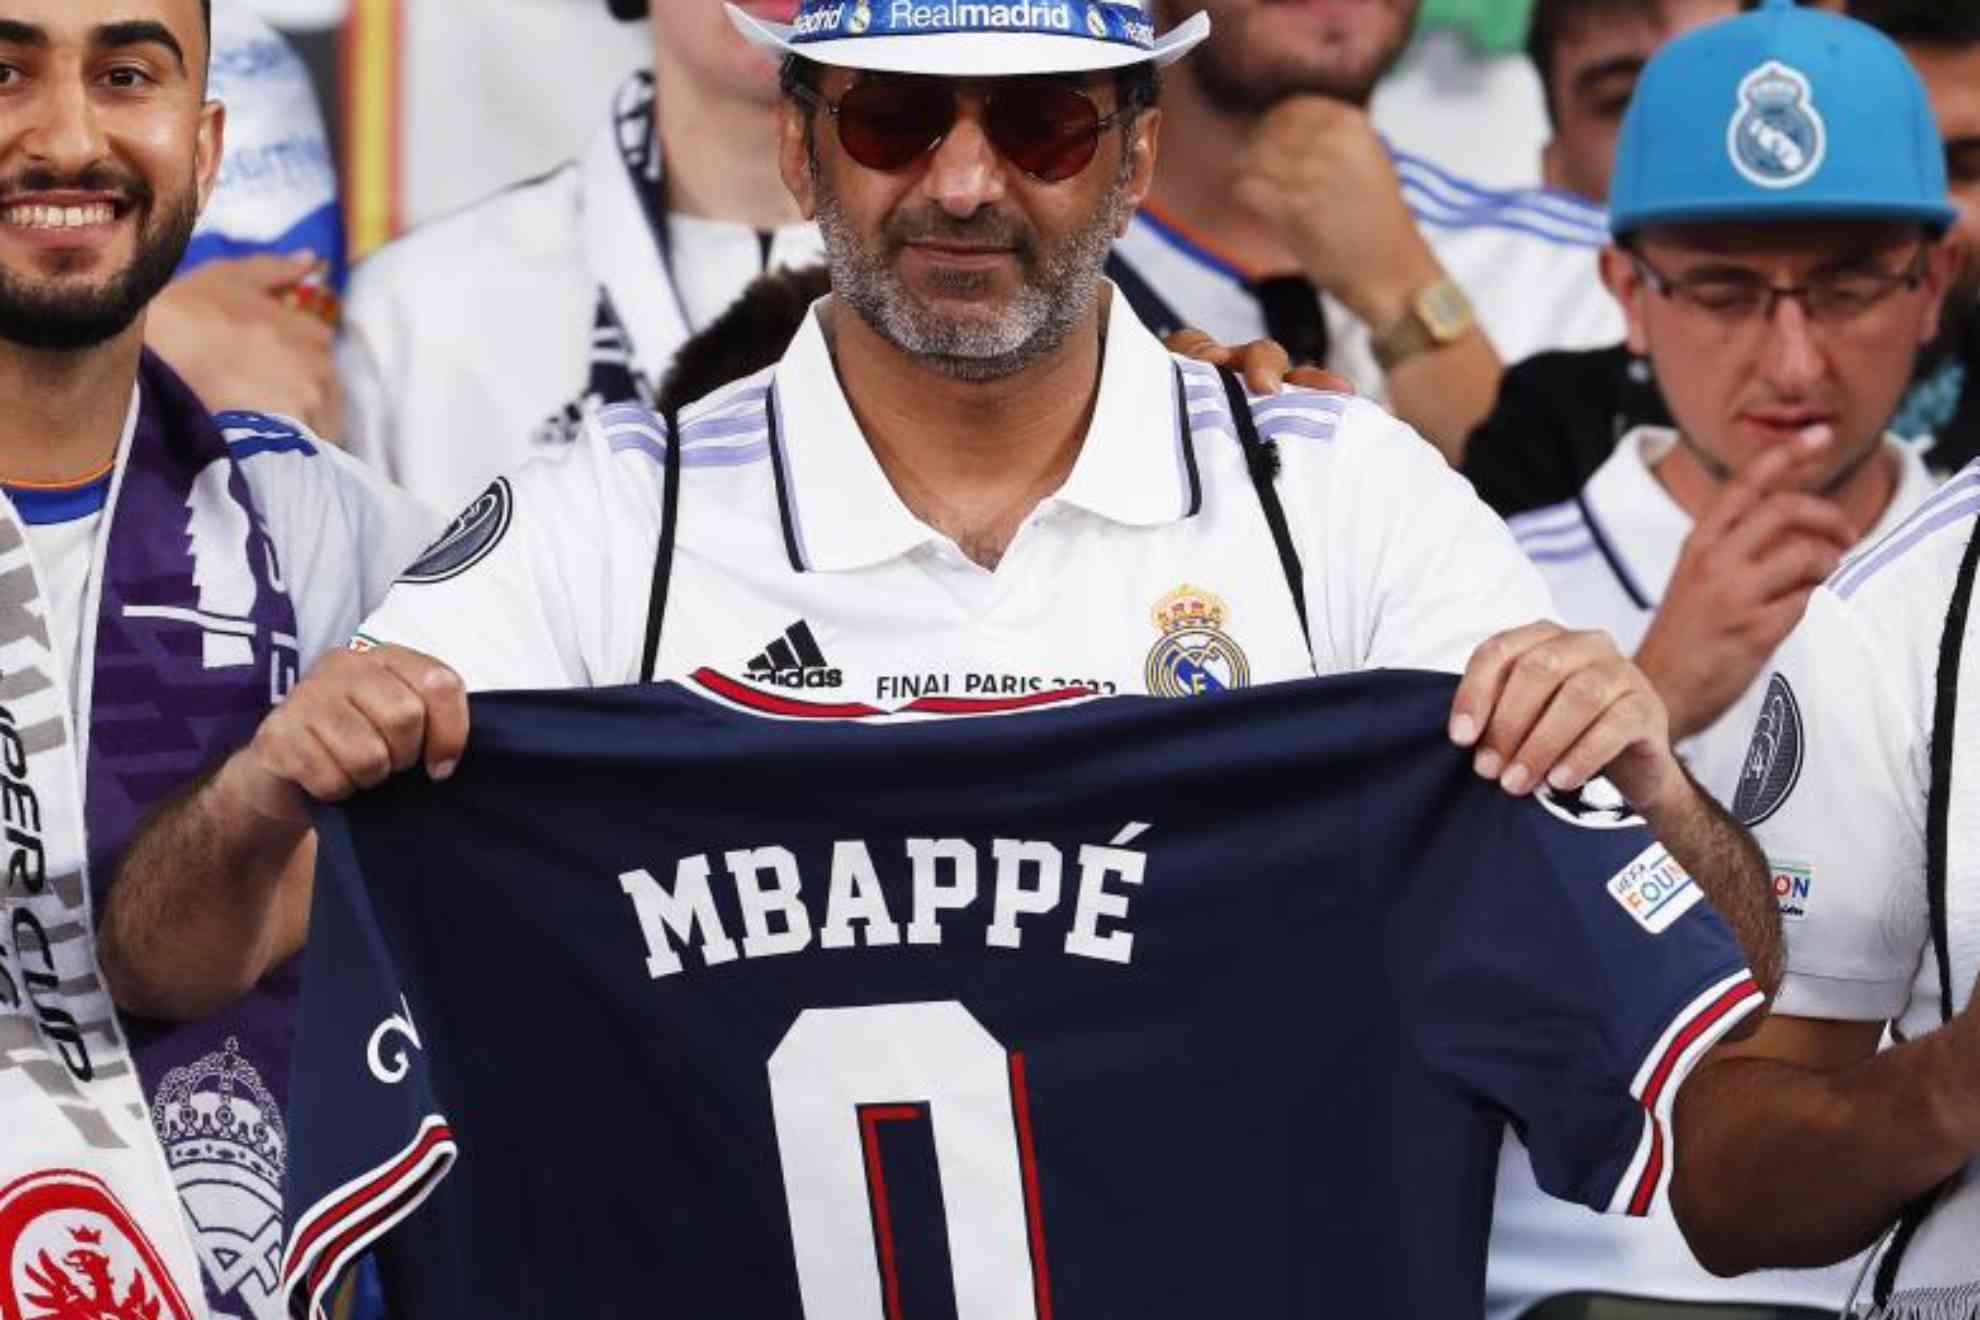 Mensaje a Mbappé en la grada del Olímpico de Helsinki: "0 Champions League"